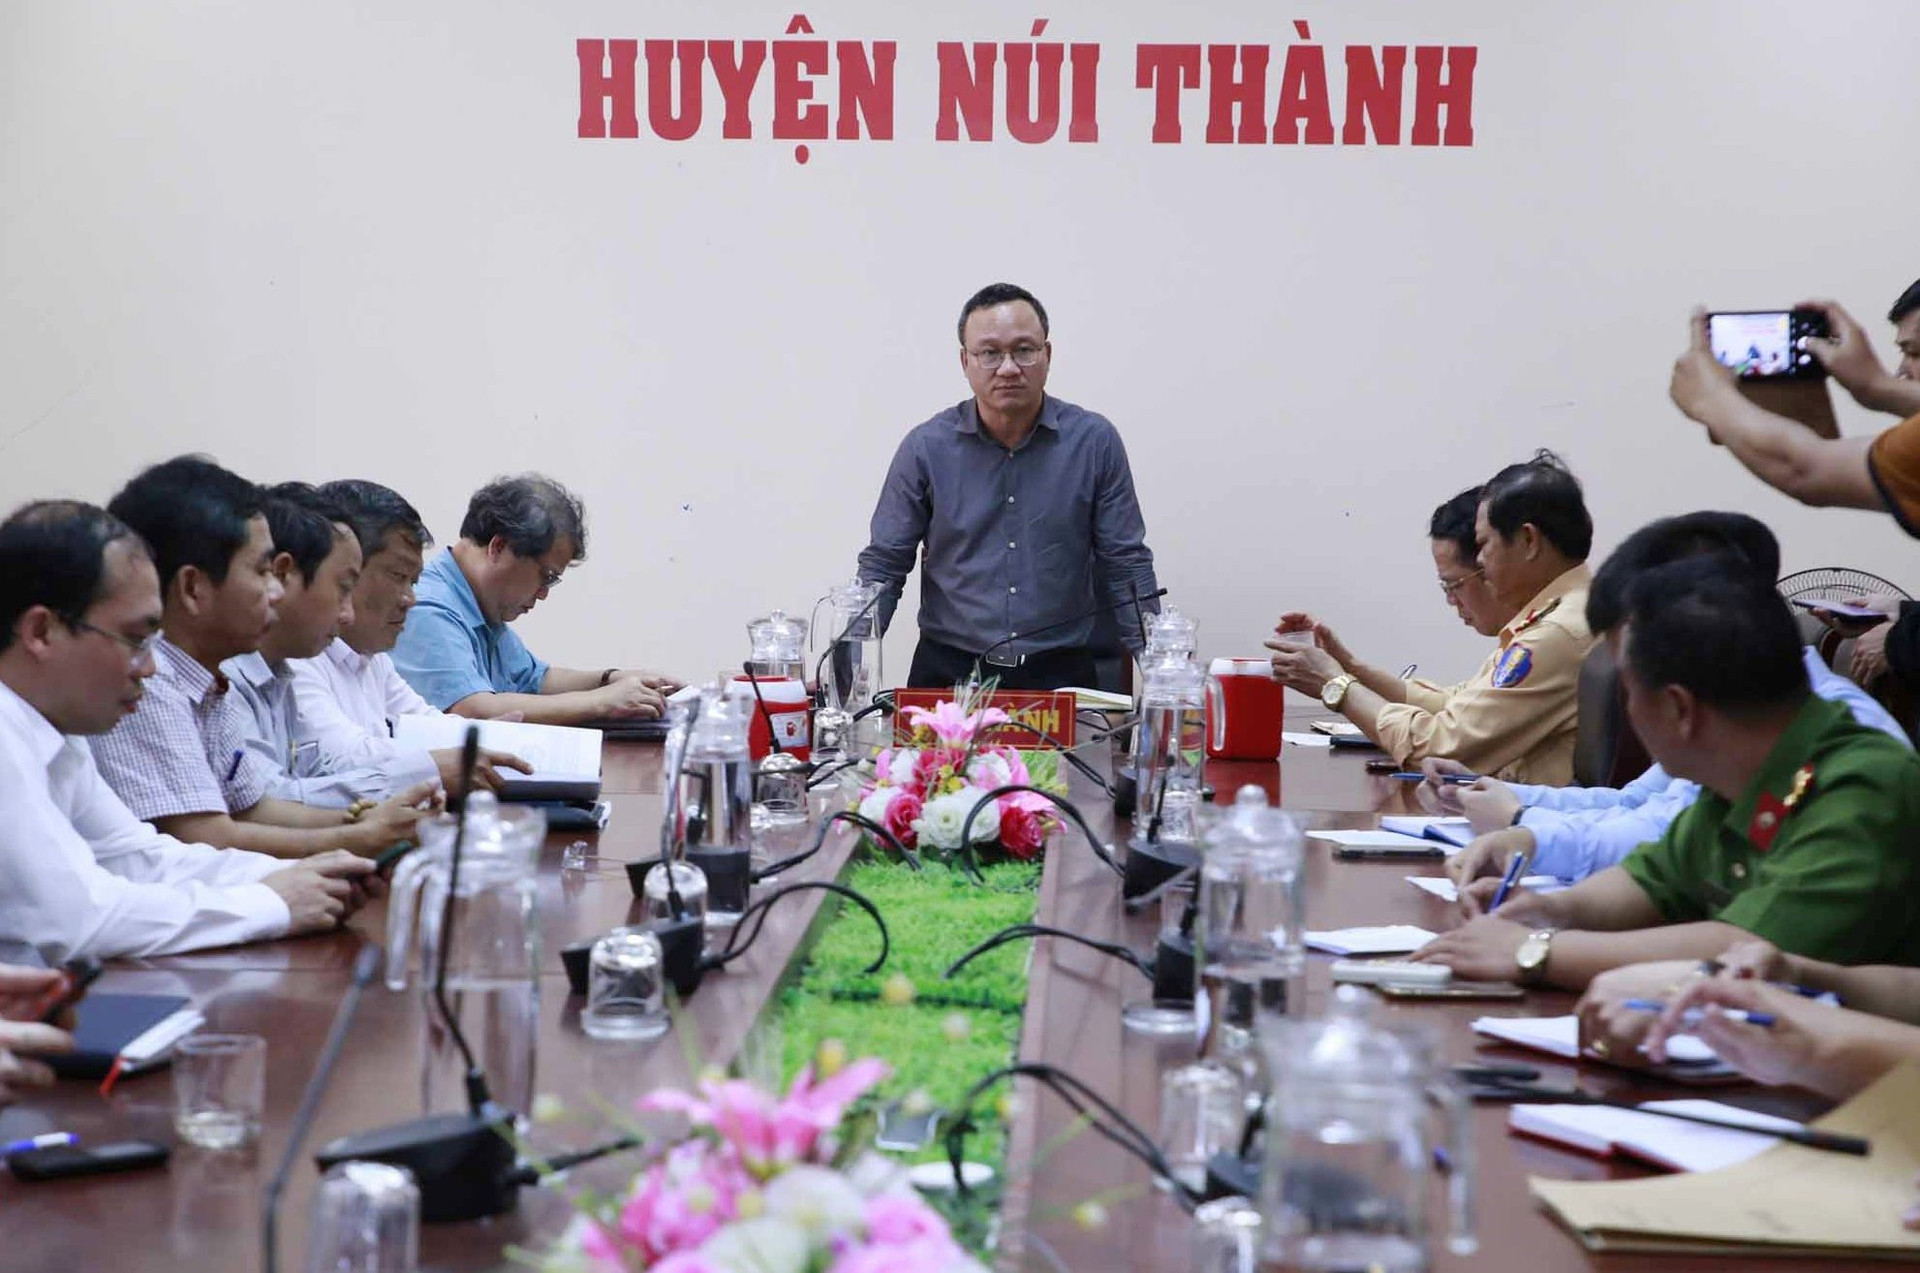 Ông Khuất Việt Hùng chủ trì buổi làm việc tại trụ sở UBND huyện Núi Thành trưa 14/2. Ảnh: T.C